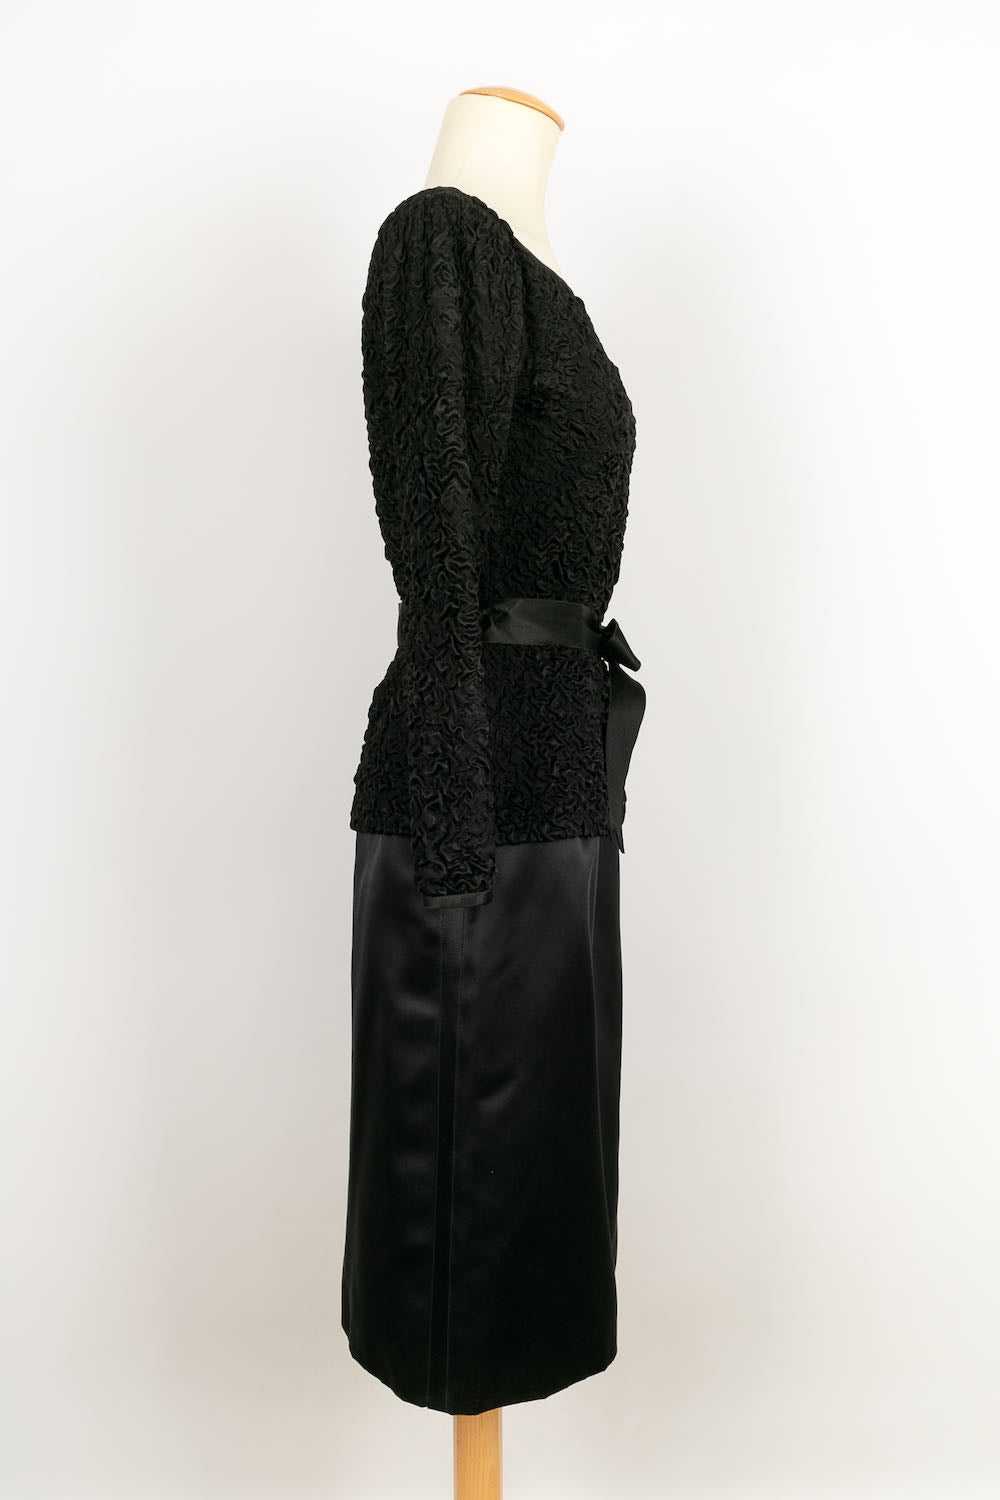 Yves Saint Laurent Haute Couture set - image 2